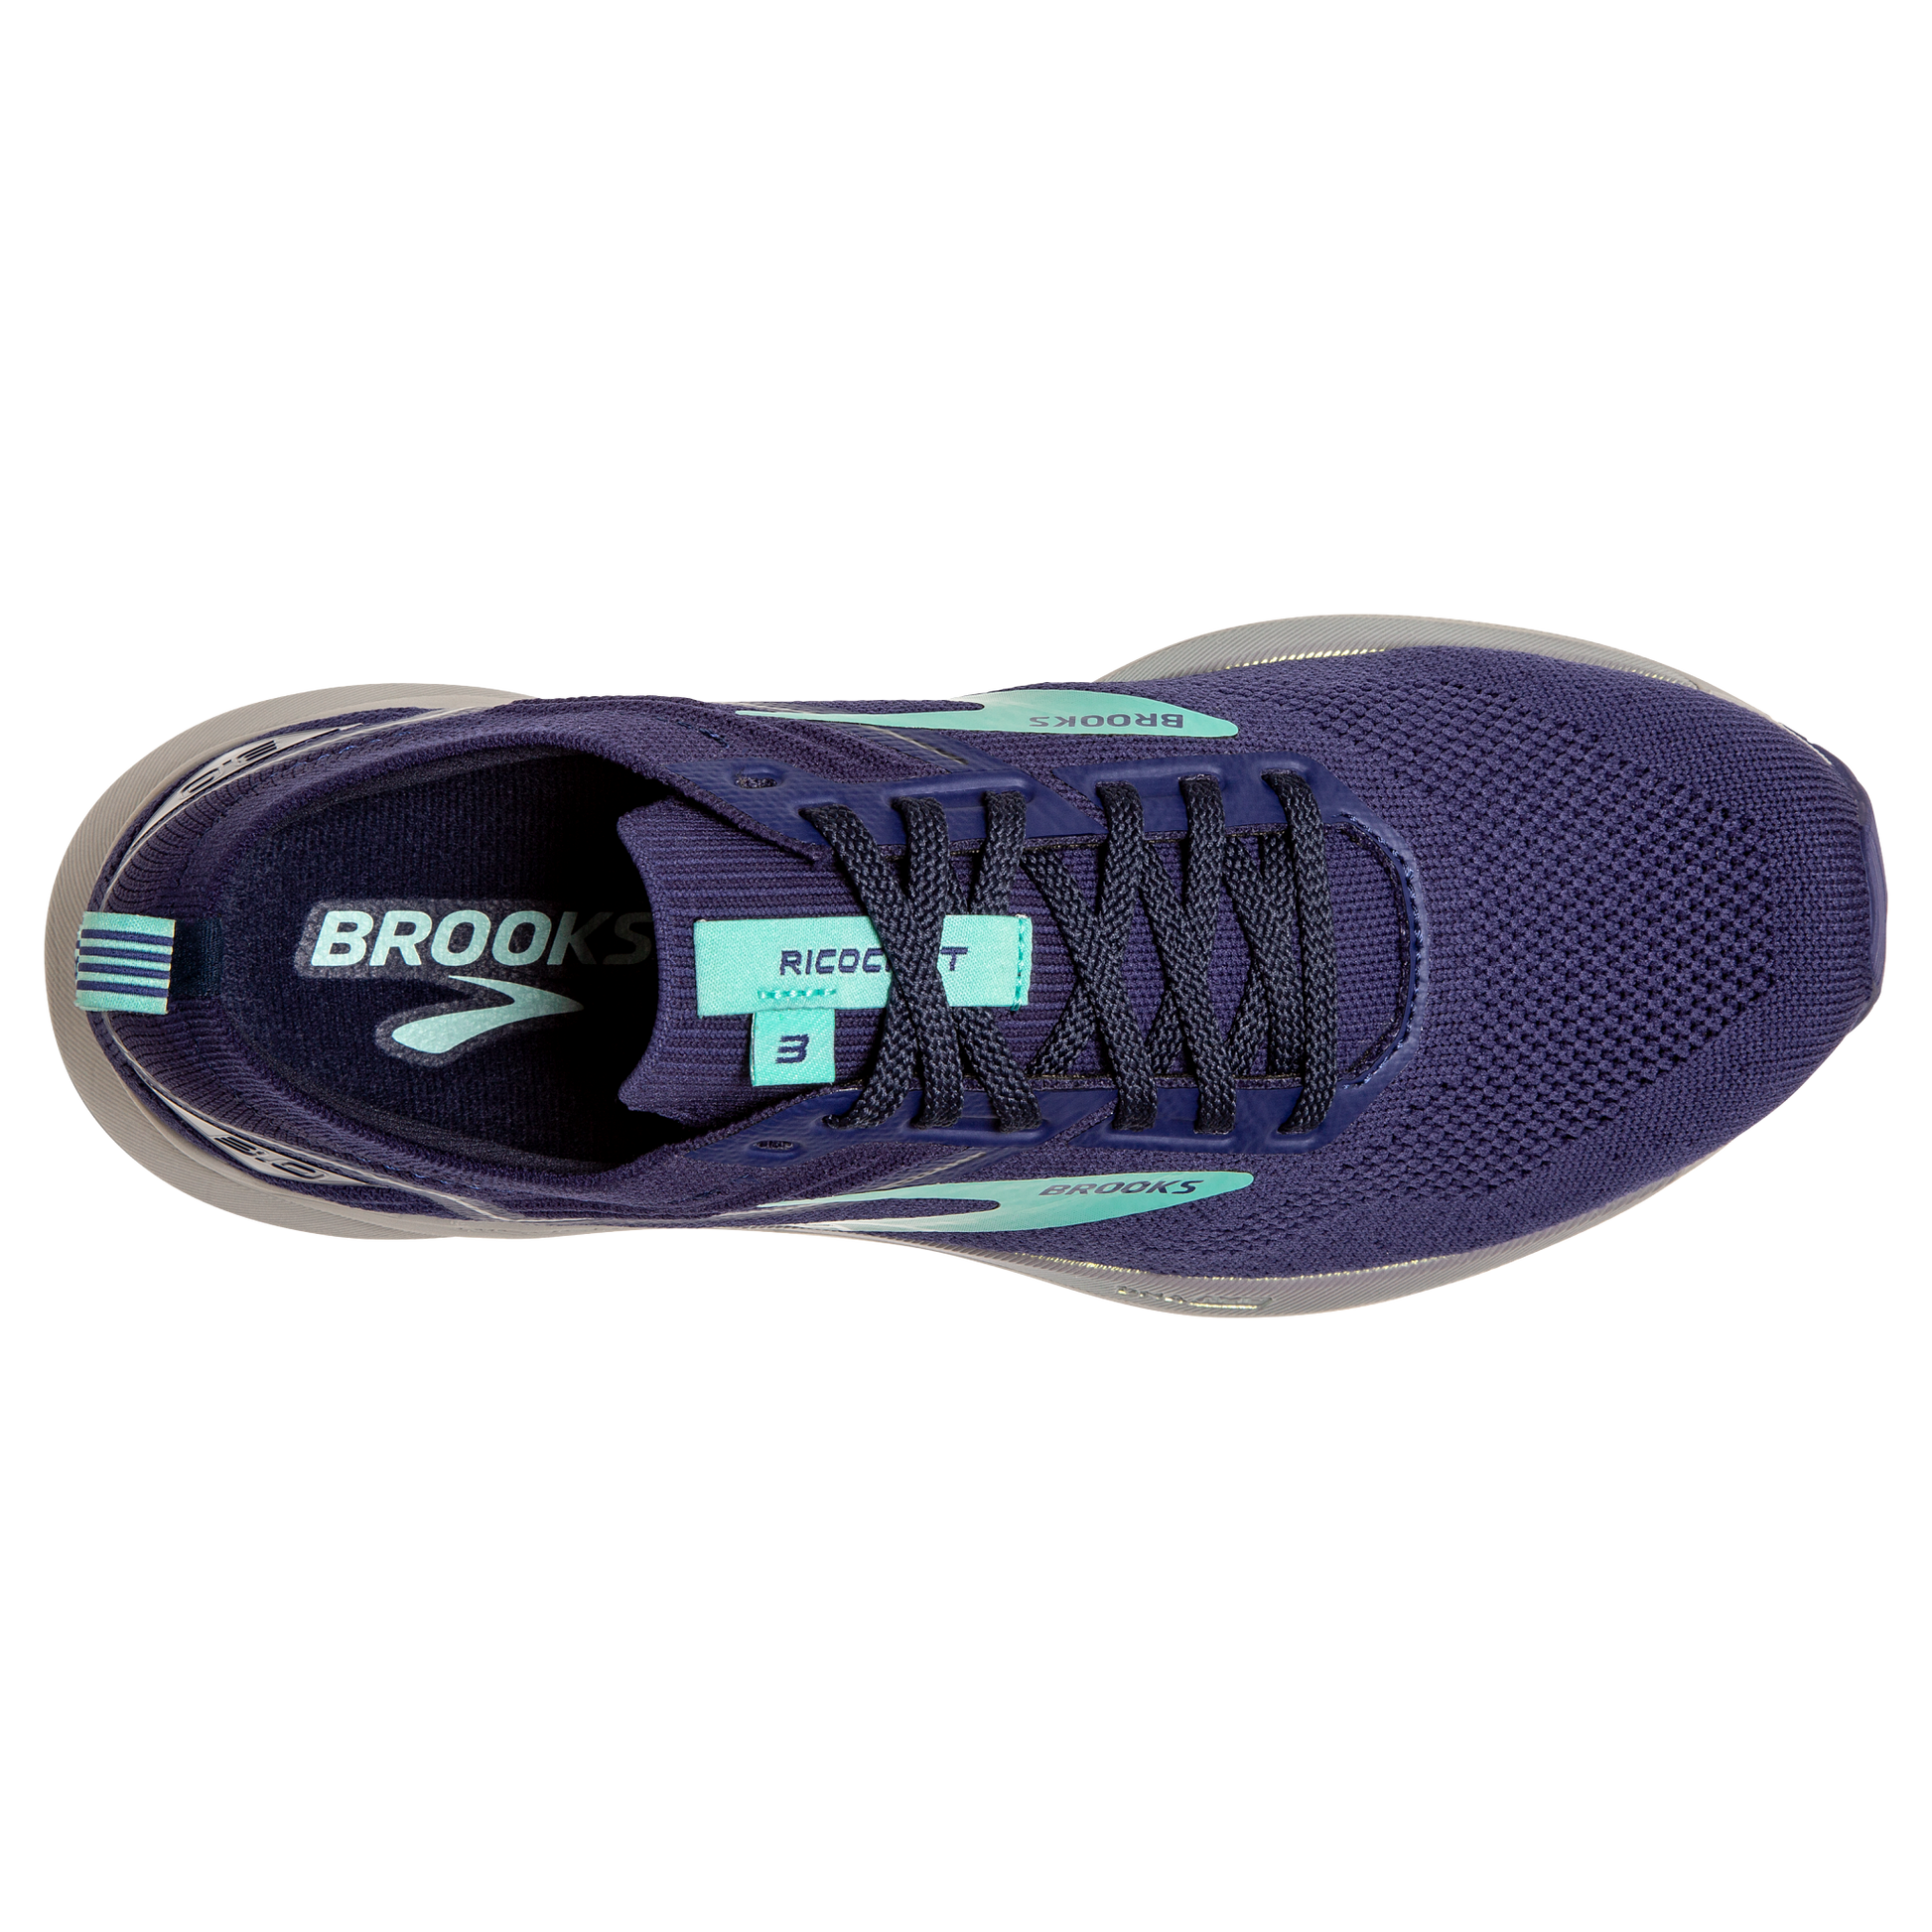 Ricochet 3, Brooks Footwear